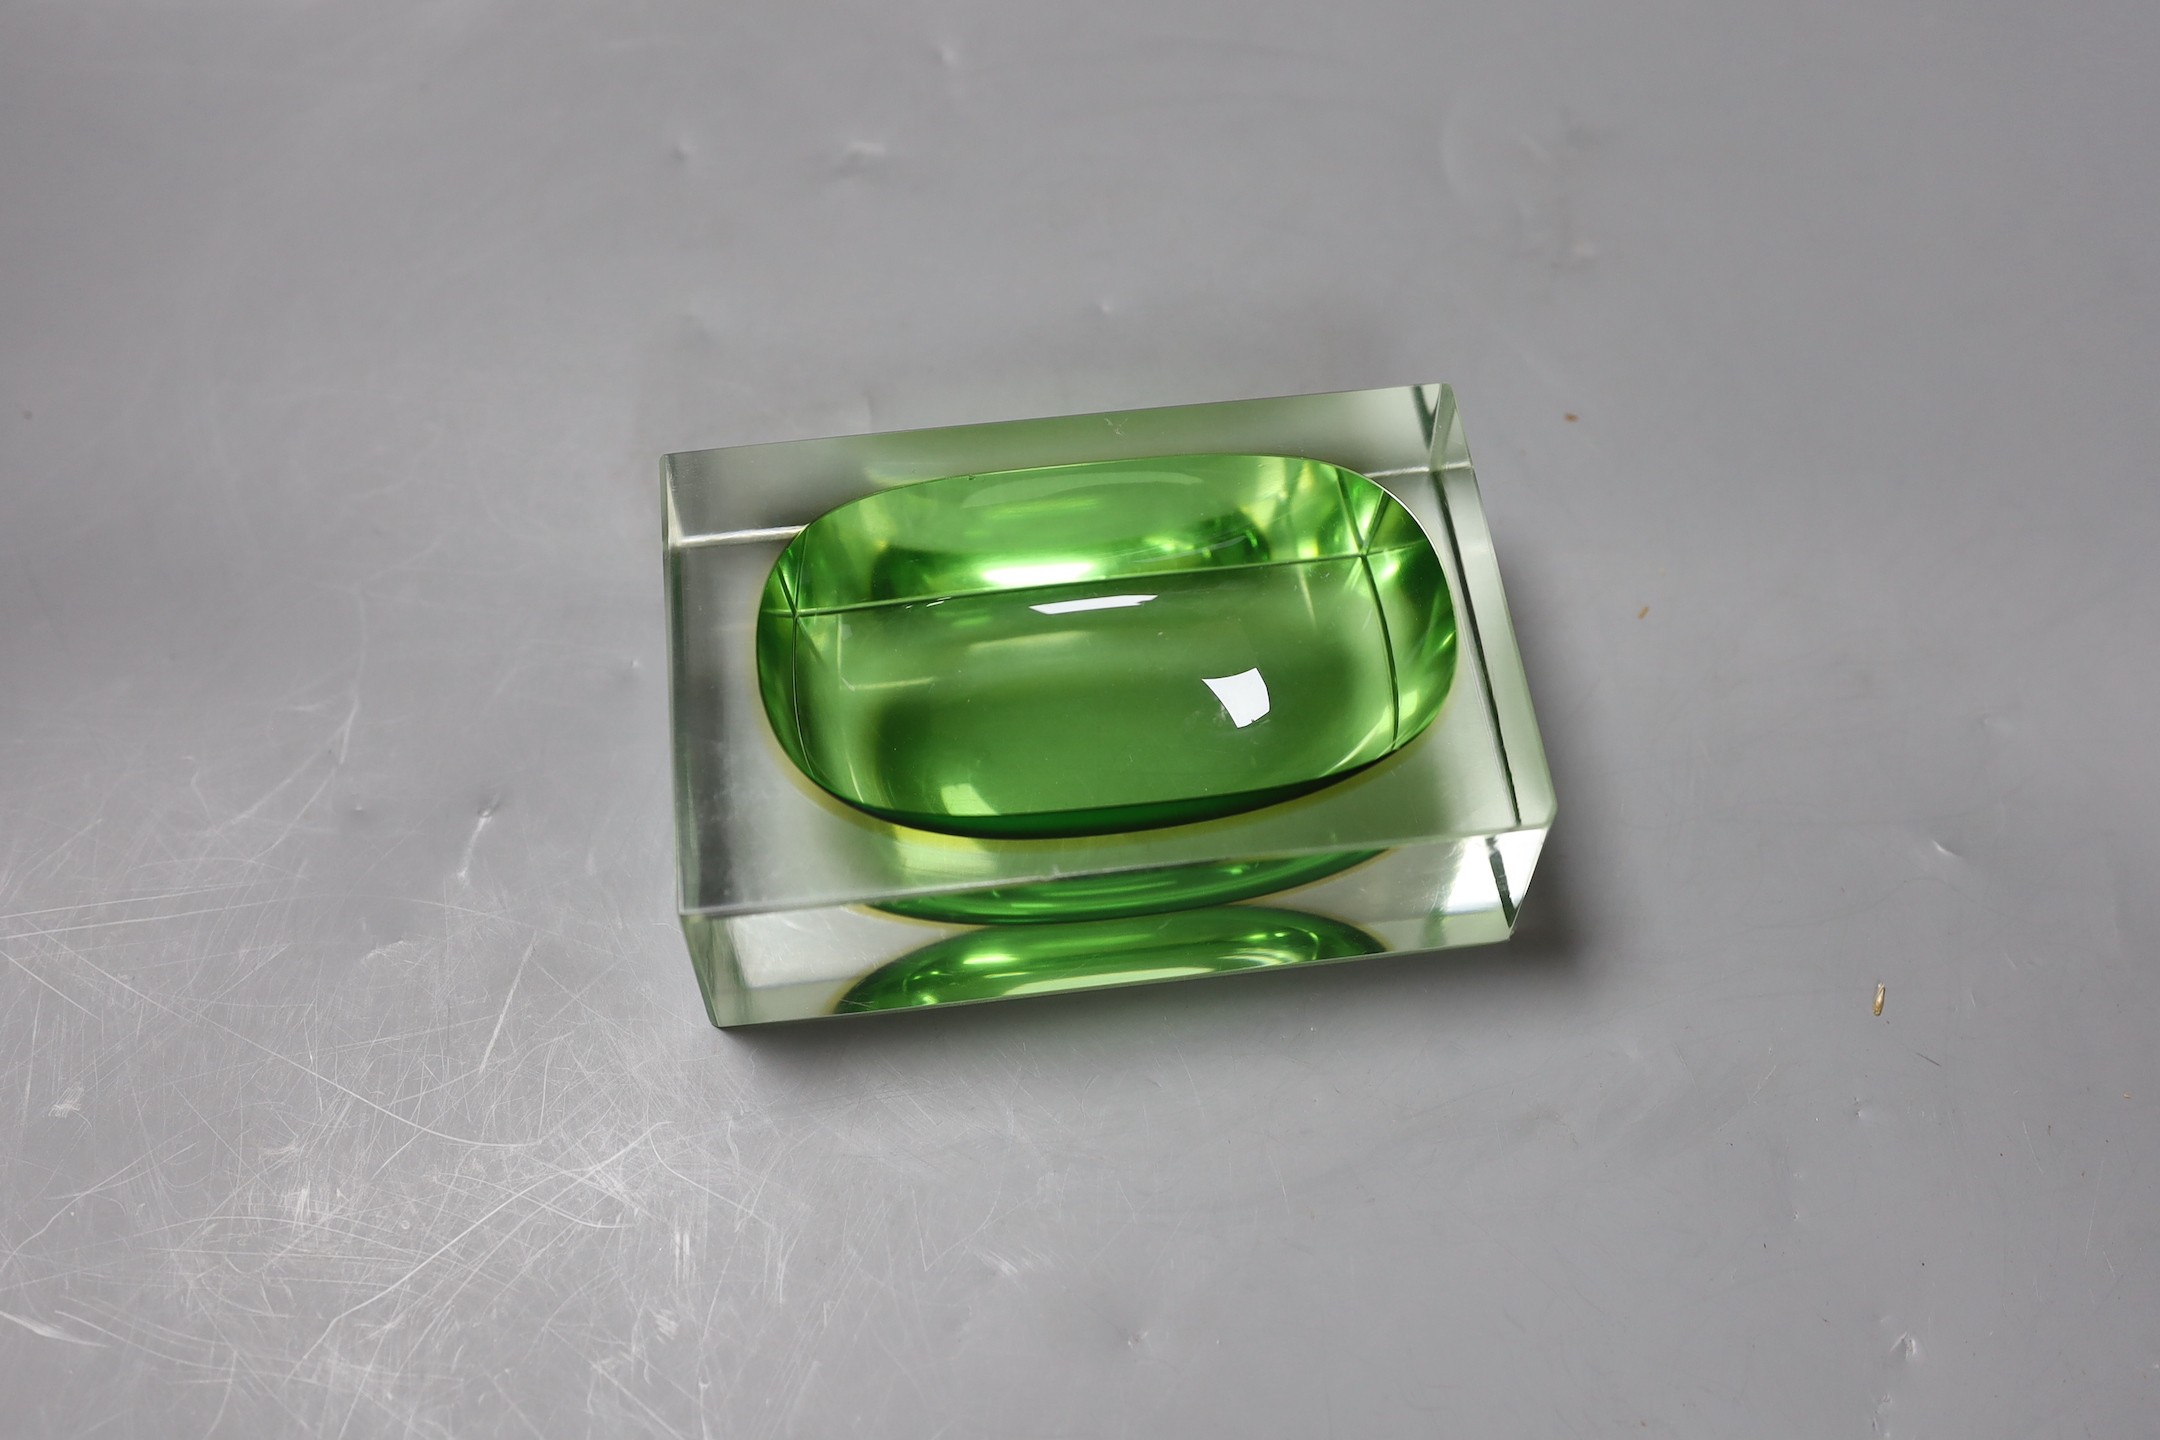 A Murano green glass oblong dish, 12.5cms wide x 4cms high